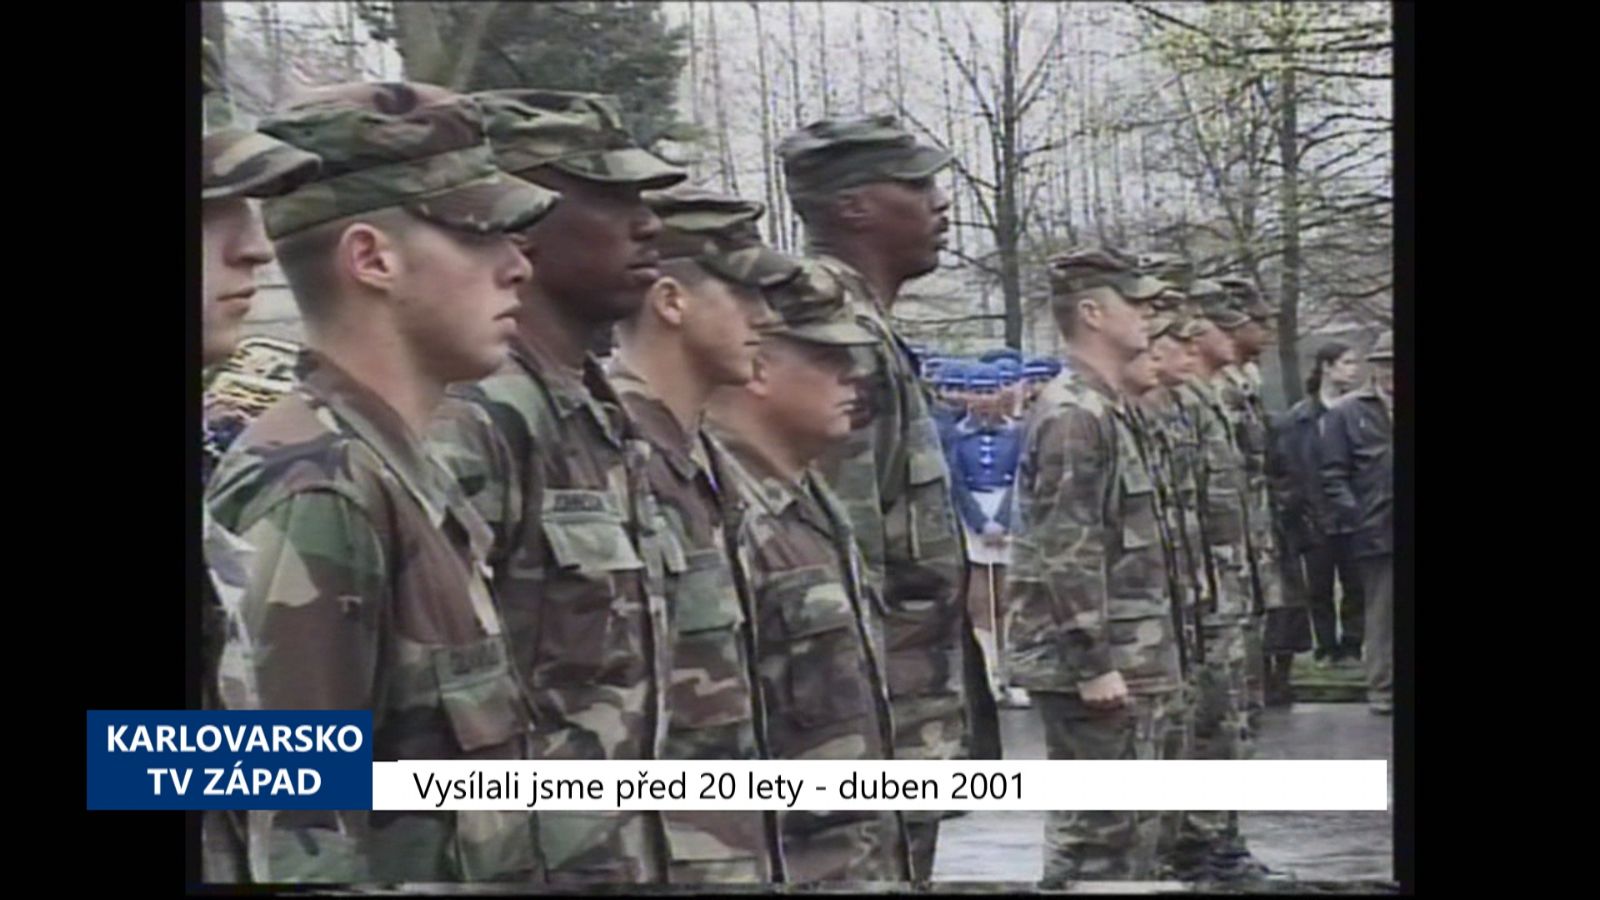 2001 – Cheb: Pietního aktu se zúčastnili i američtí vojáci (TV Západ)